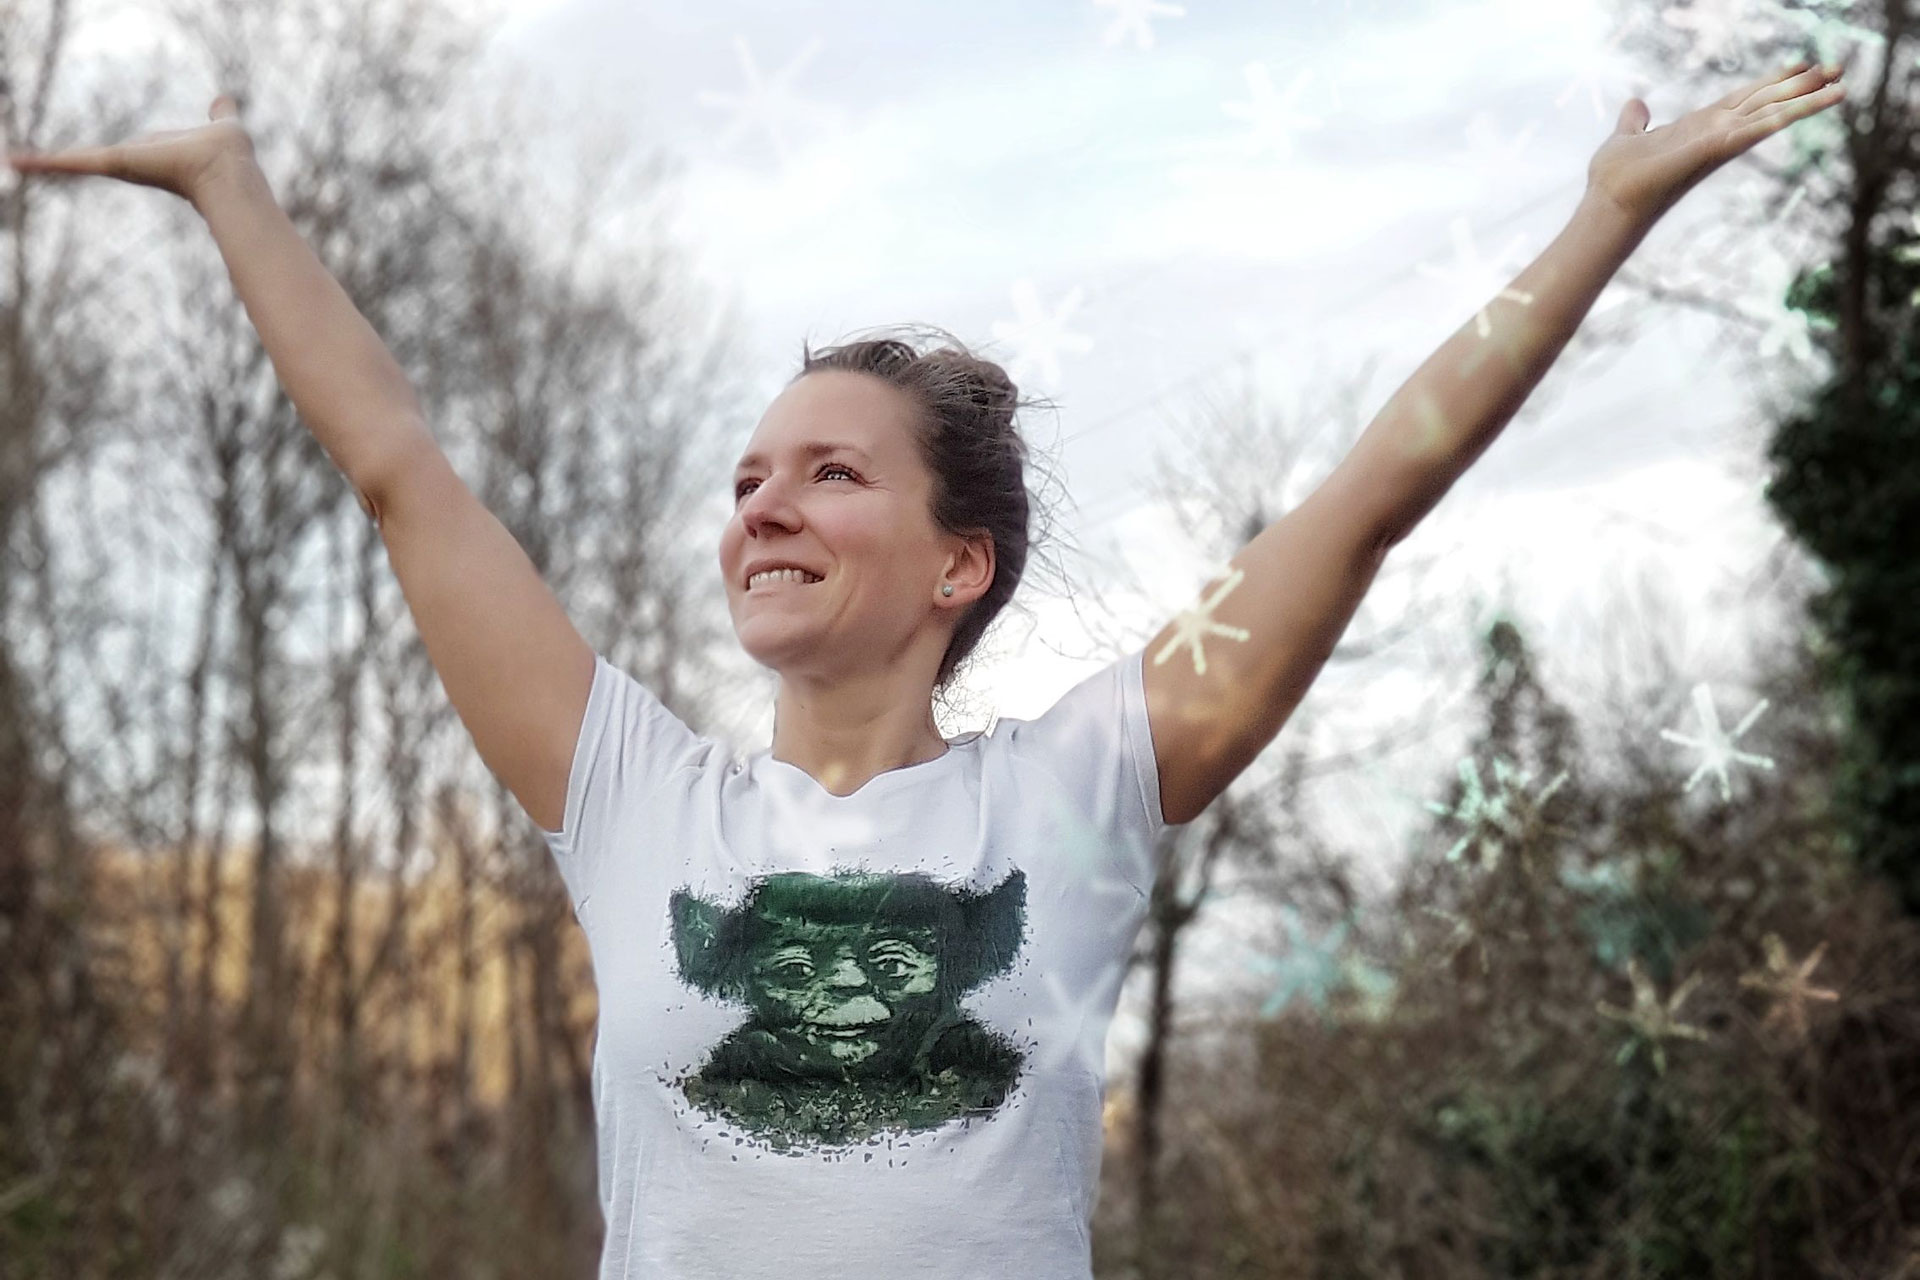 Fitnessbloggerin Bernadette Hörner genießt die winterliche Kälte im T-Shirt